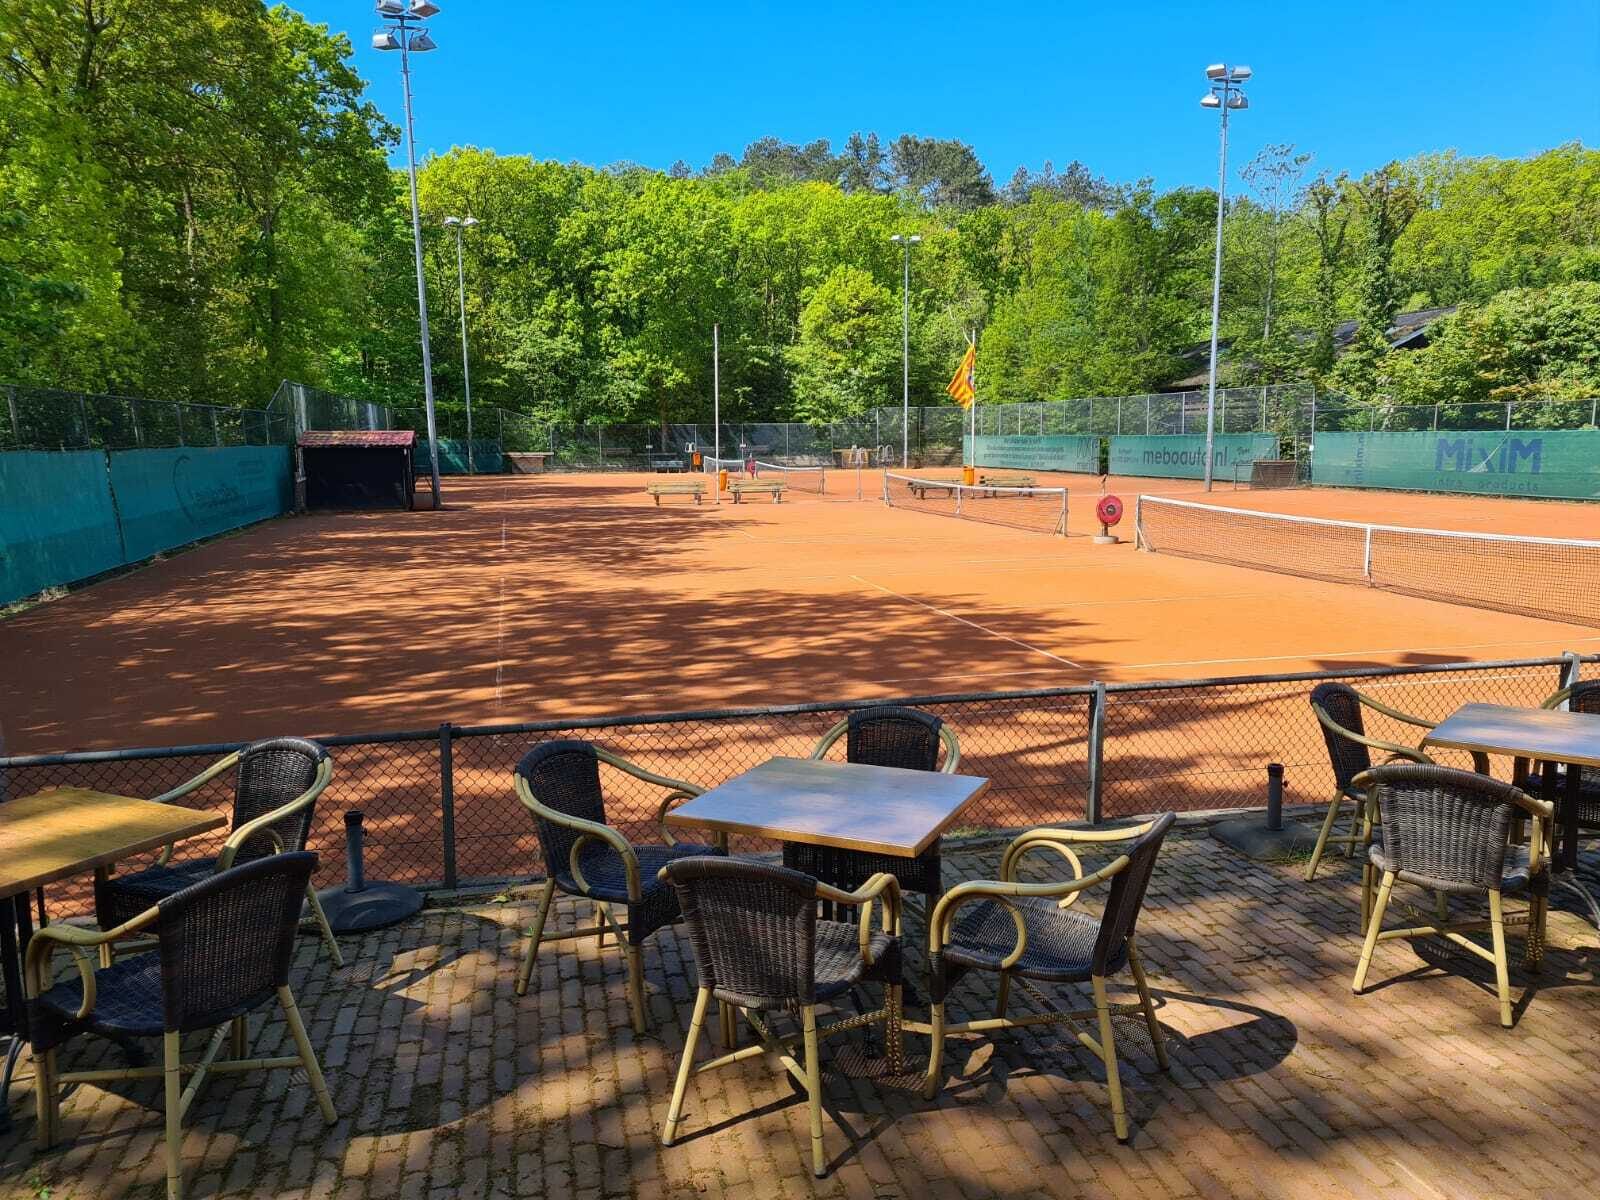 Tennisclub Schoorl